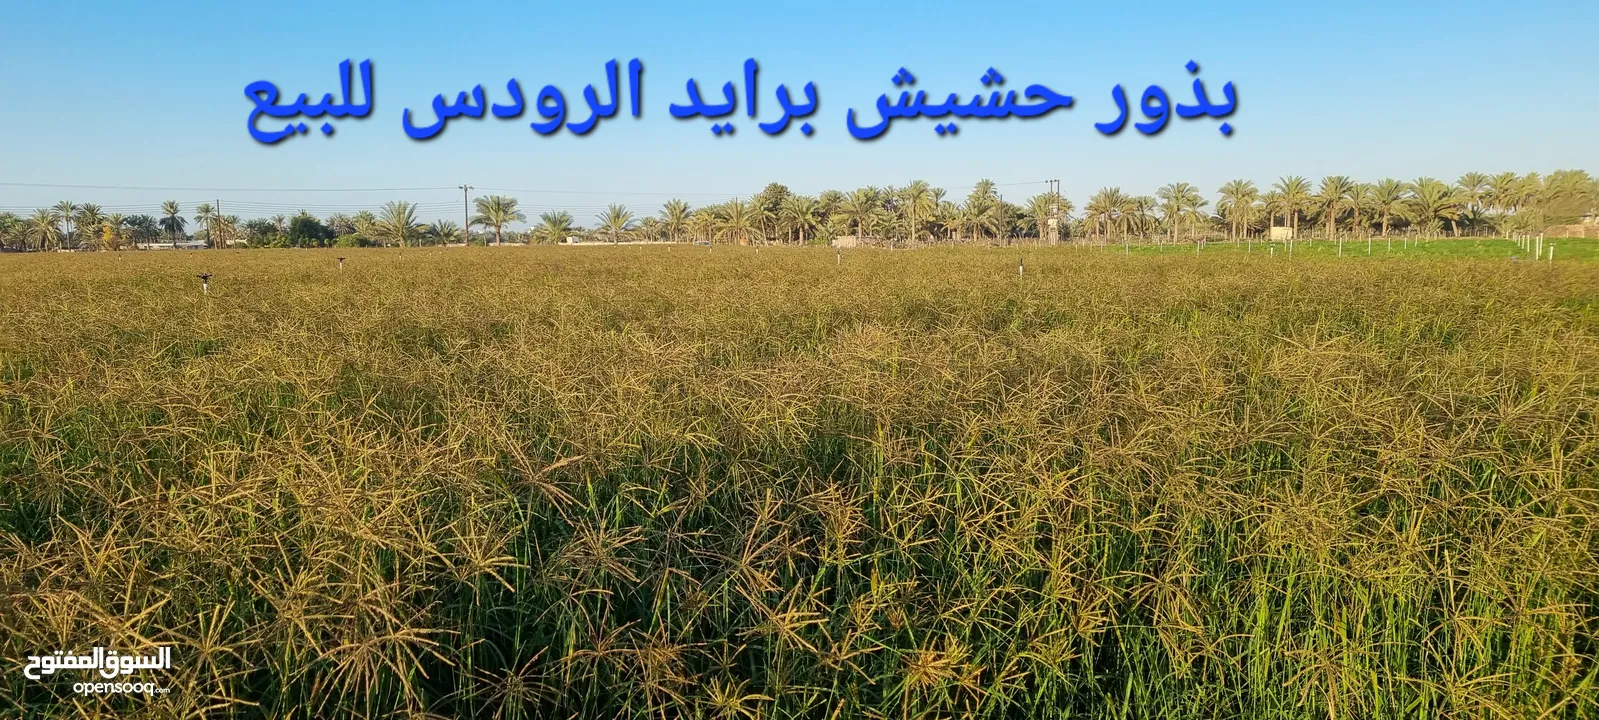 بذر حشيش برايد عماني و بذر حرية غشمر و شتلات بونيكام